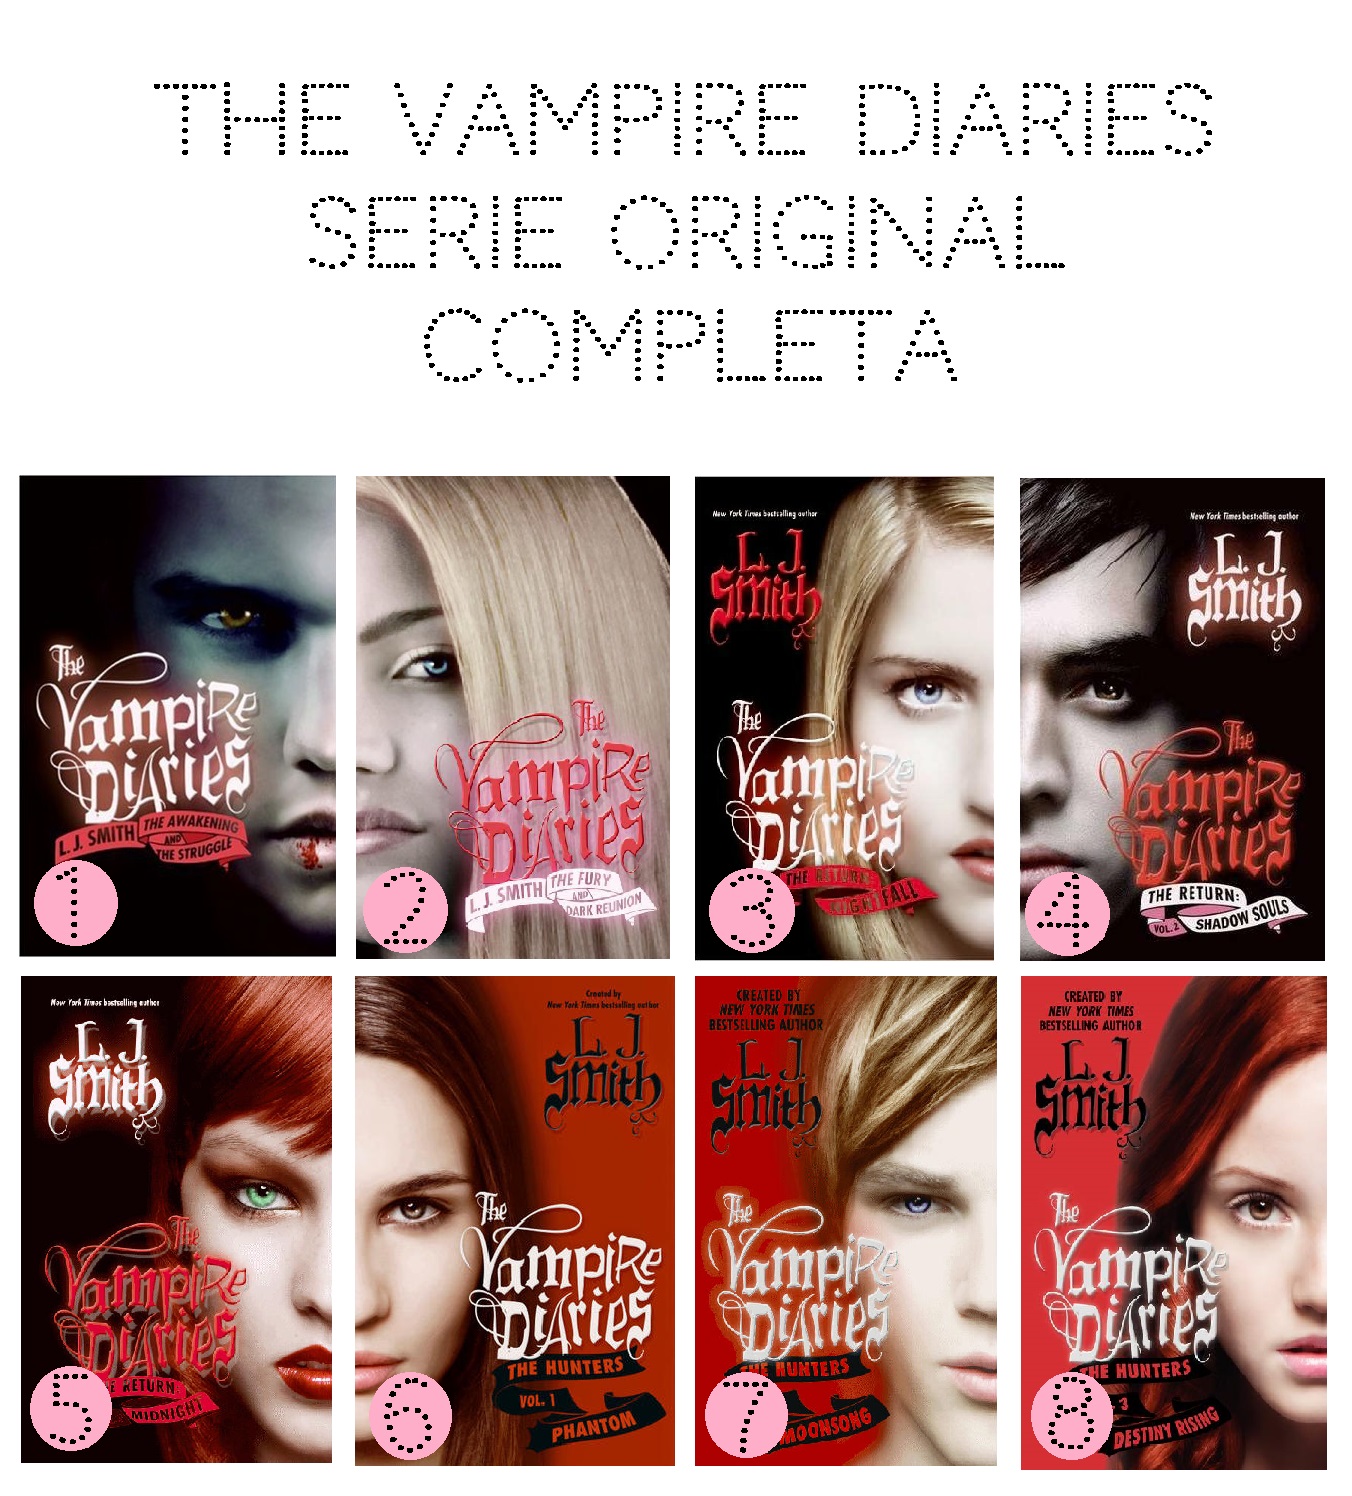 The Vampire Diaries (Diários do Vampiro): Livros VS. Série de TV